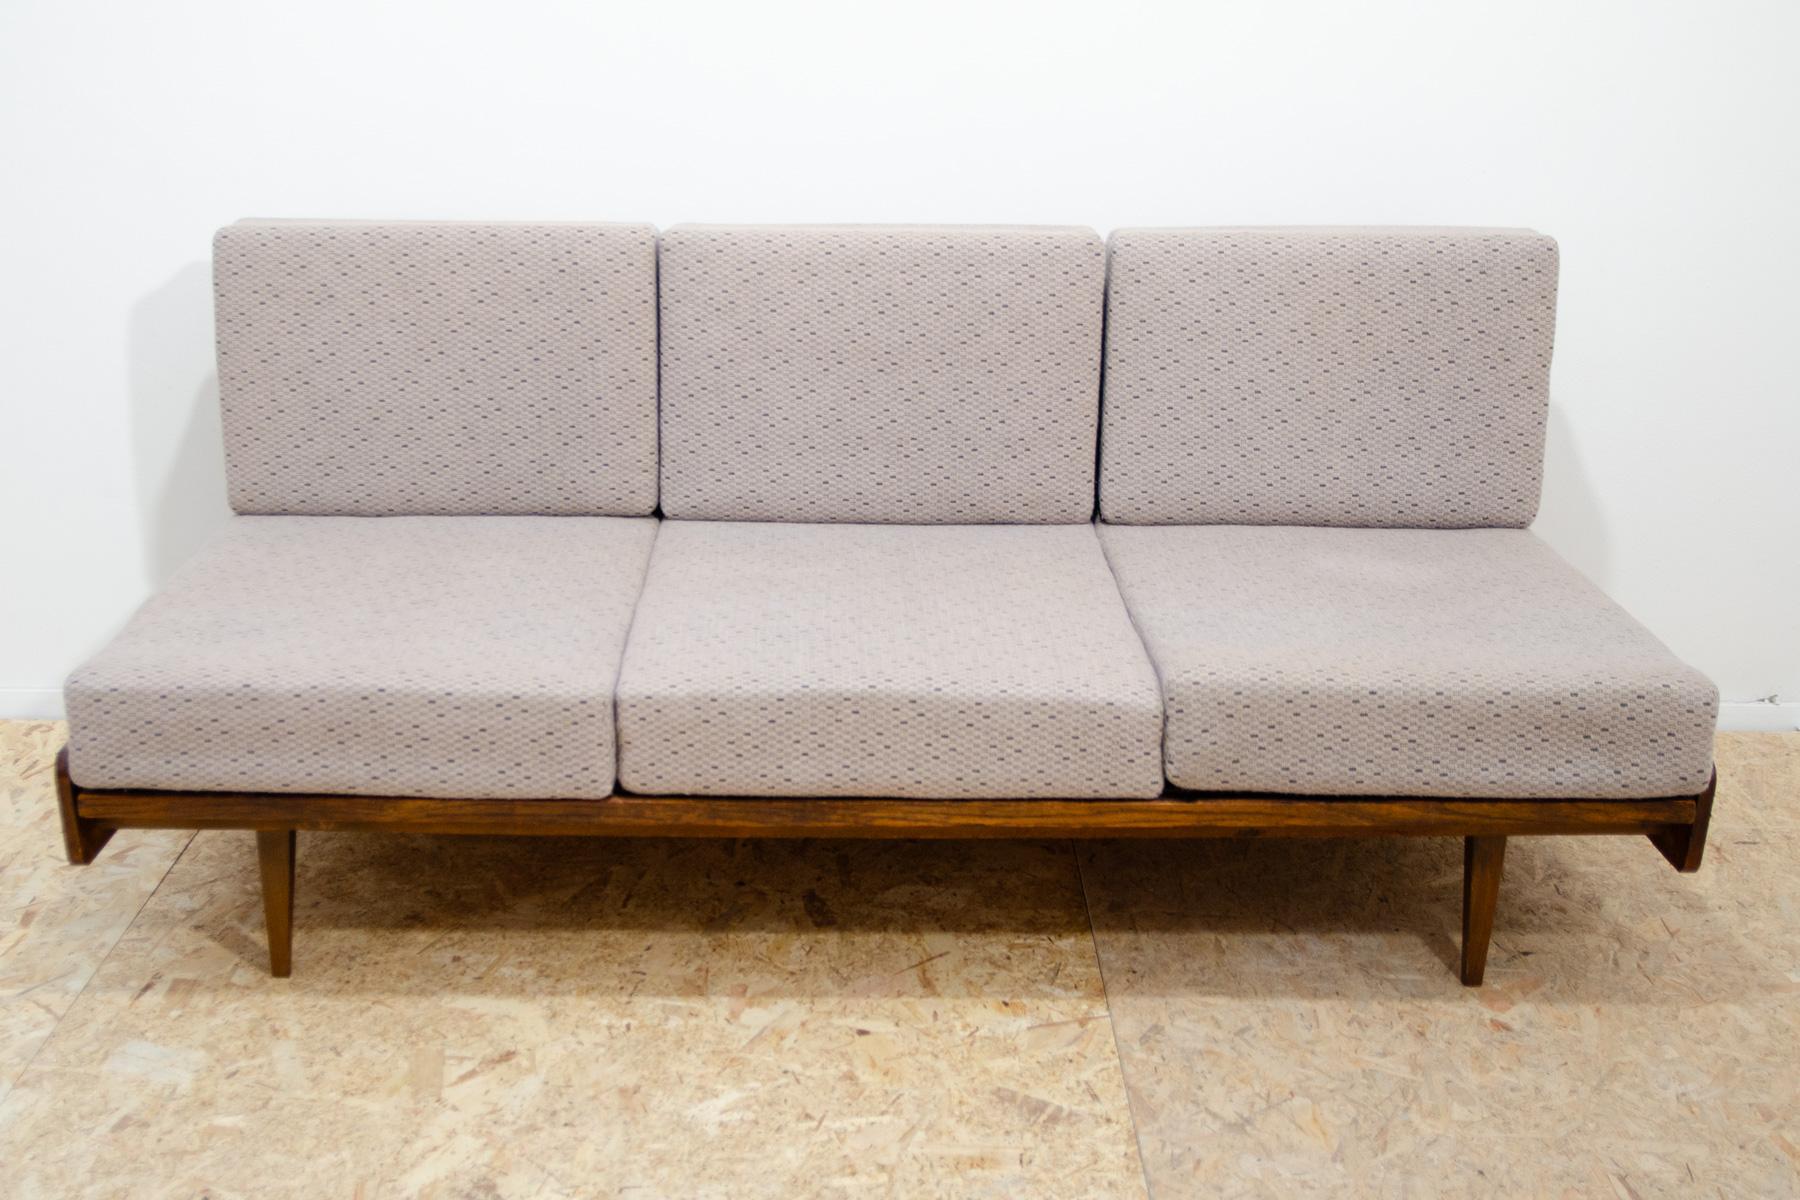 Dieses Sofa aus der Mitte des Jahrhunderts wurde von der Firma Interiér Praha in der ehemaligen Tschechoslowakei in den 1960er Jahren hergestellt. Das Sofa verfügt über einen Ausziehmechanismus, mit dem Sie das Sofa leicht in ein Bett umwandeln